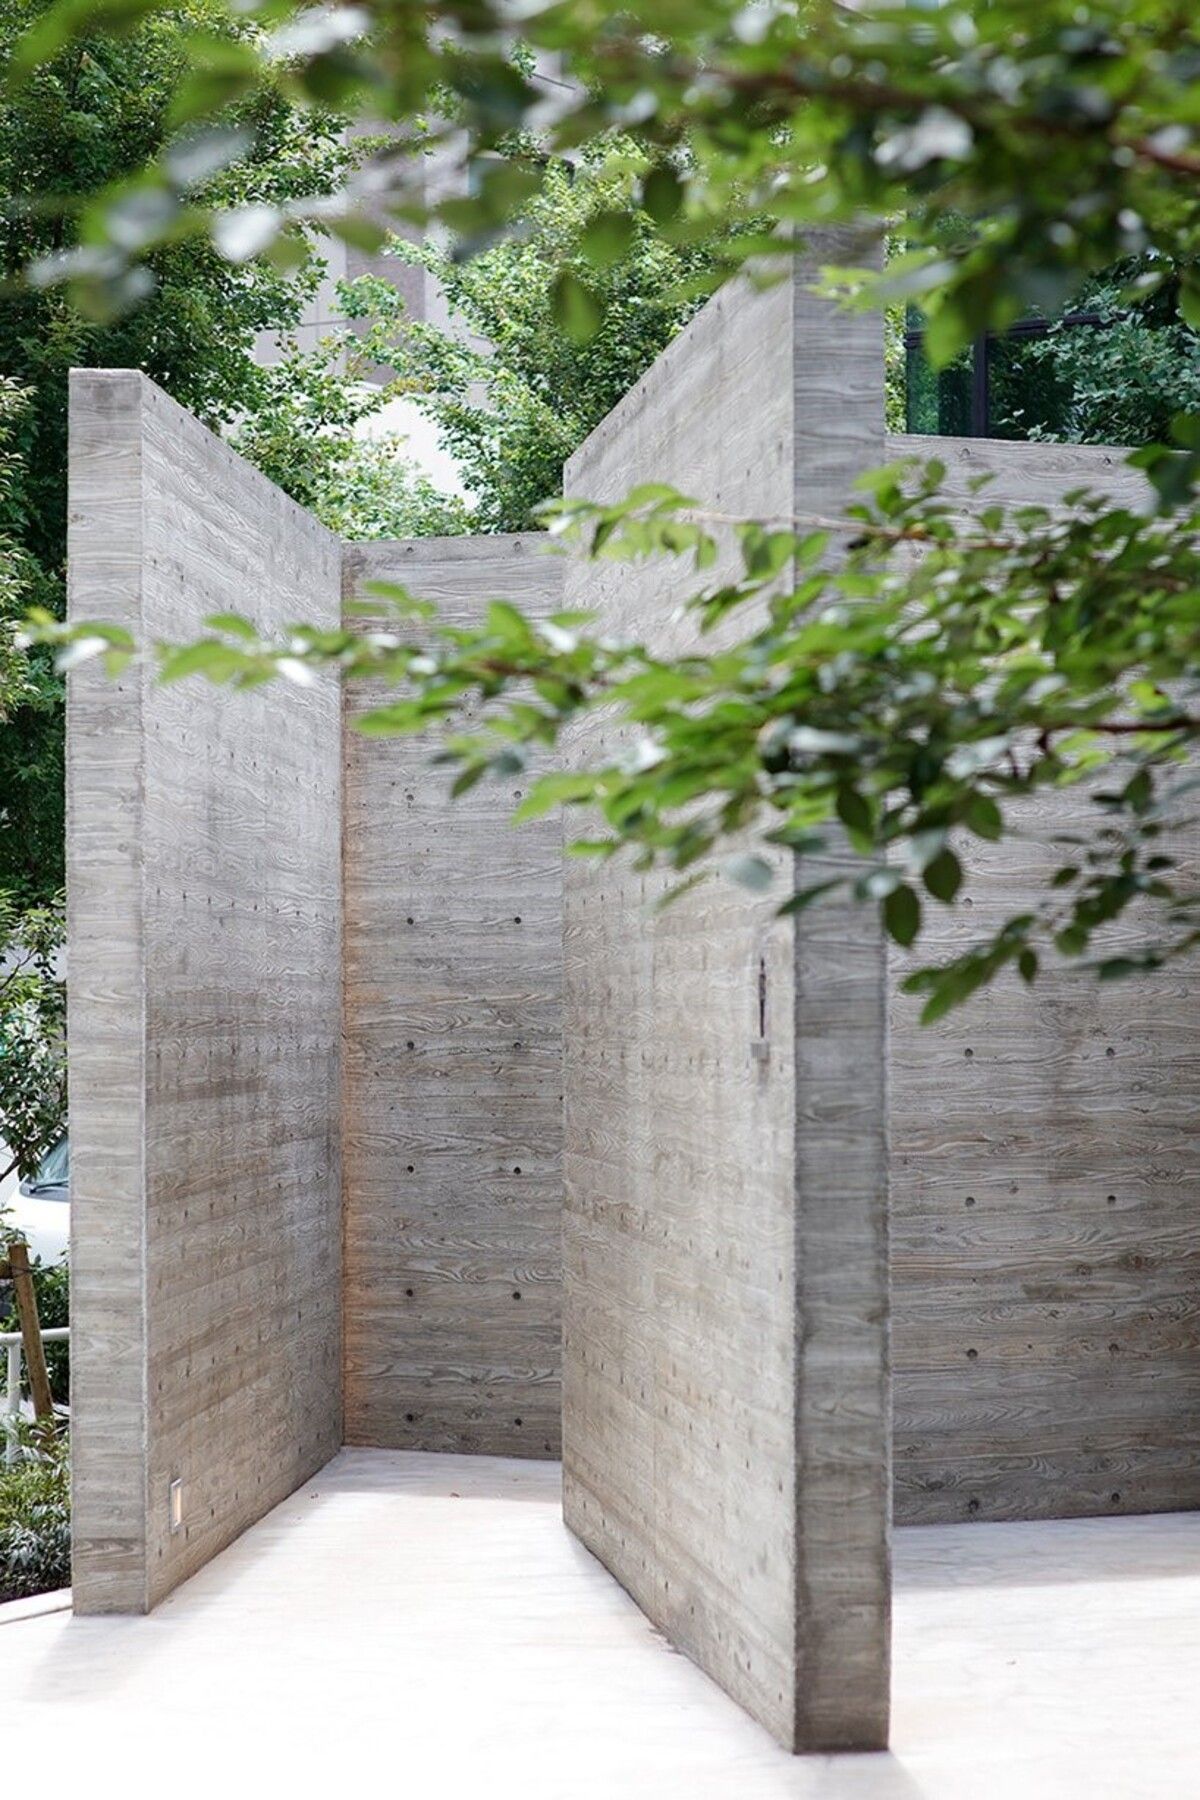 Concrete Tokyo toilet – Wonderwall | Nhà vệ sinh công cộng như một mê cung thời nguyên thủy tại Tokyo